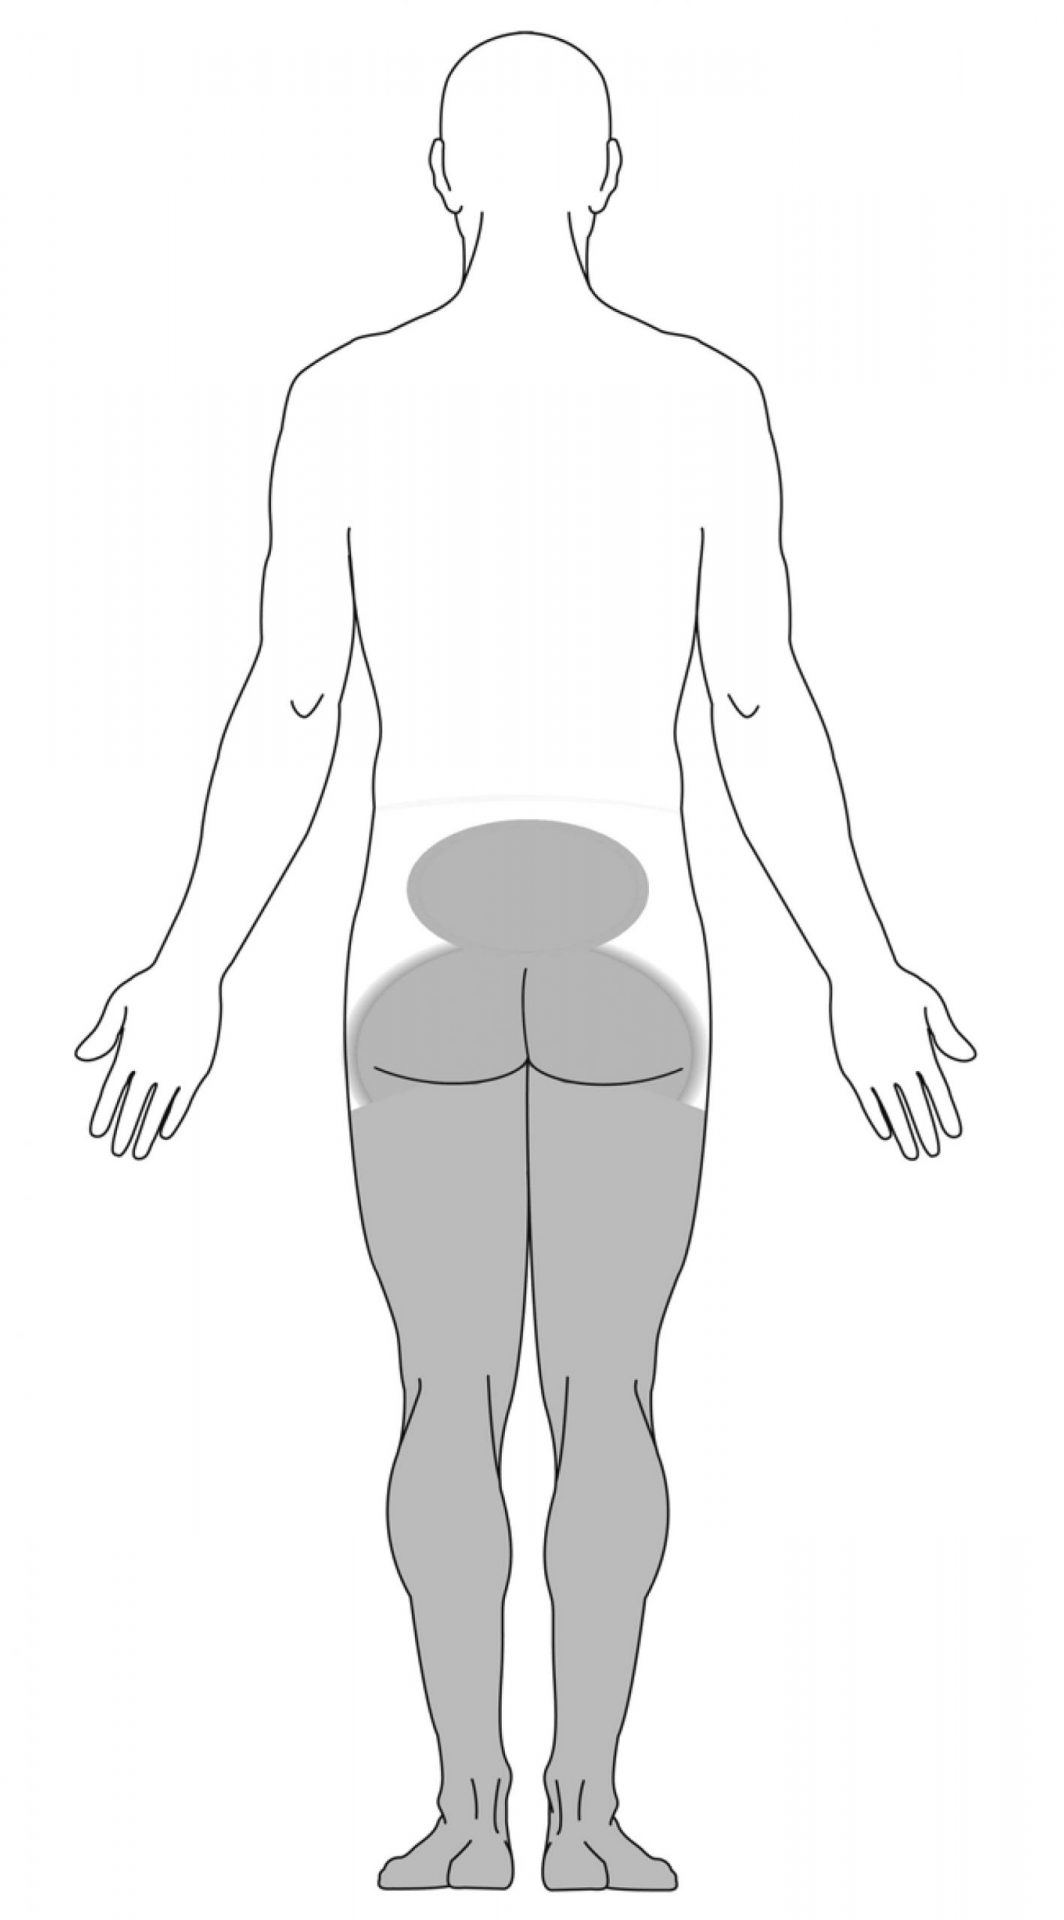 Symptome in den Beinen aufgrund des Cauda-Equina-Syndroms